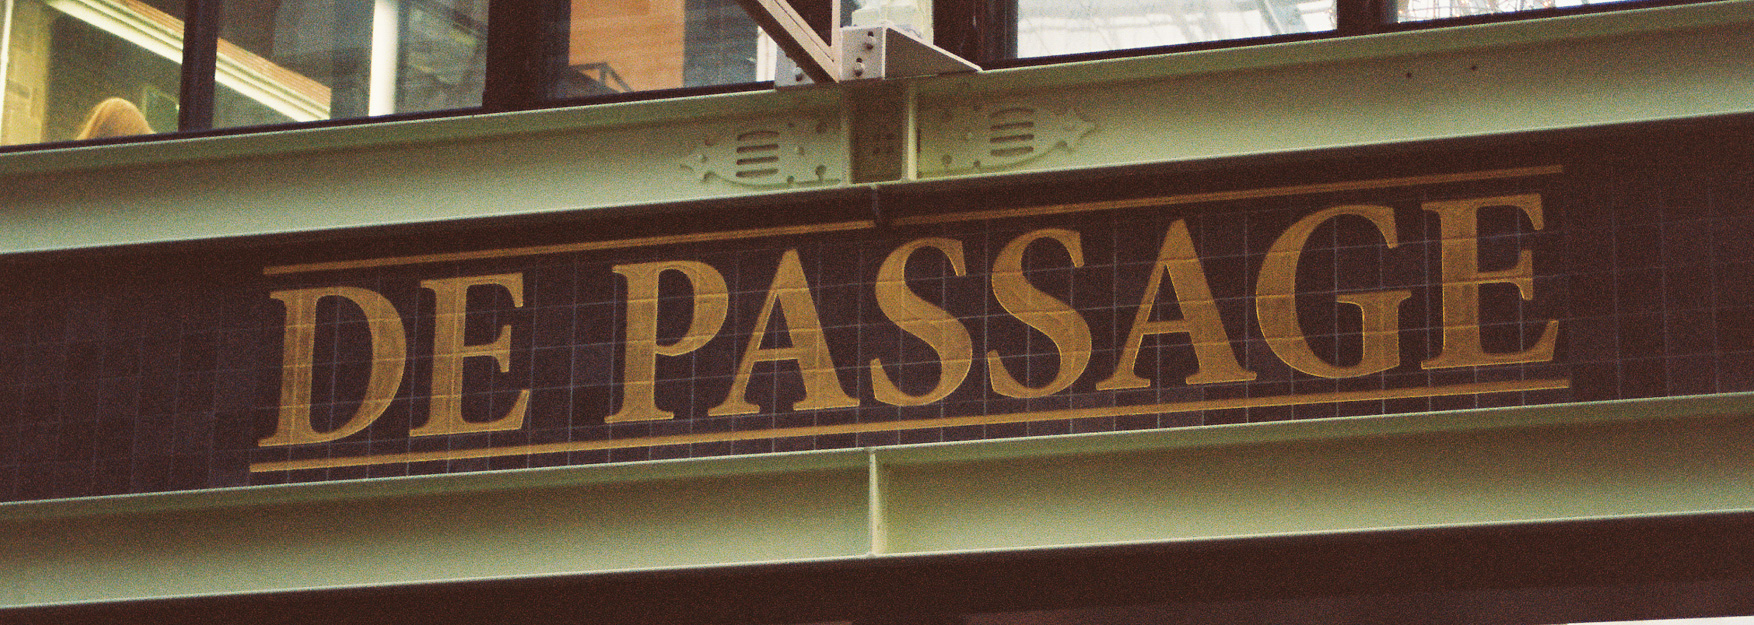 Passage-new